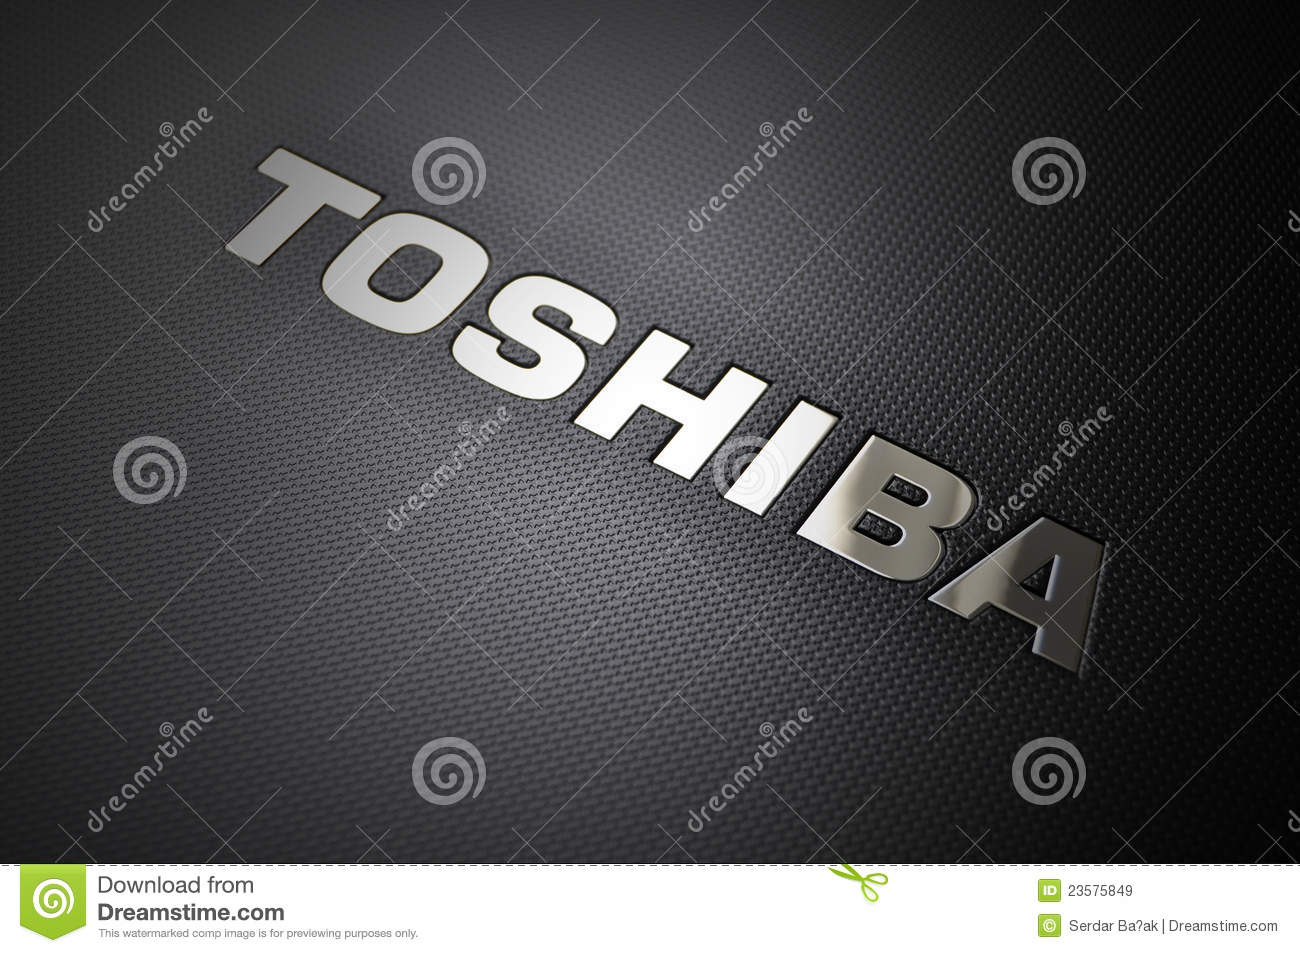 toshiba-laptop-logo-23575849